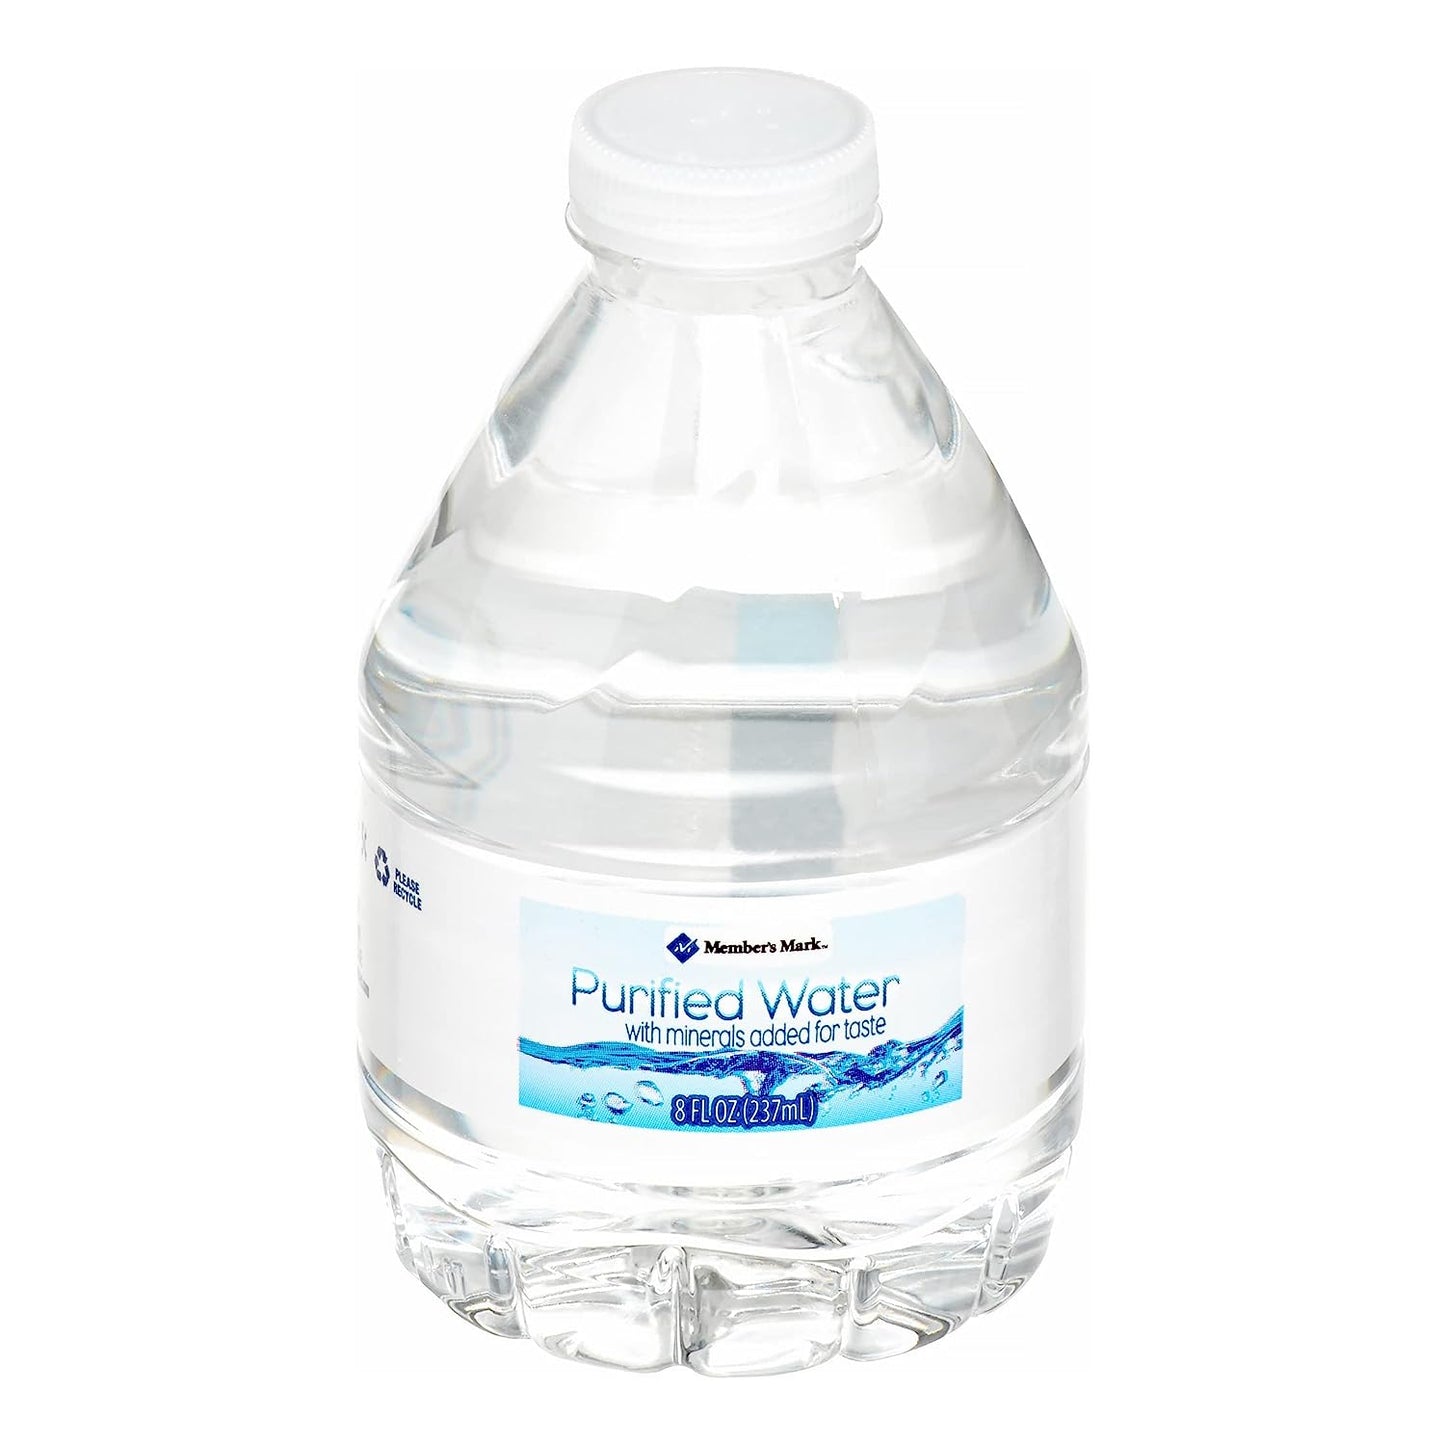 Member's Mark Purified Bottled Water (8 fl. oz., 80 pk.) TOTAL 320 BOTTLES